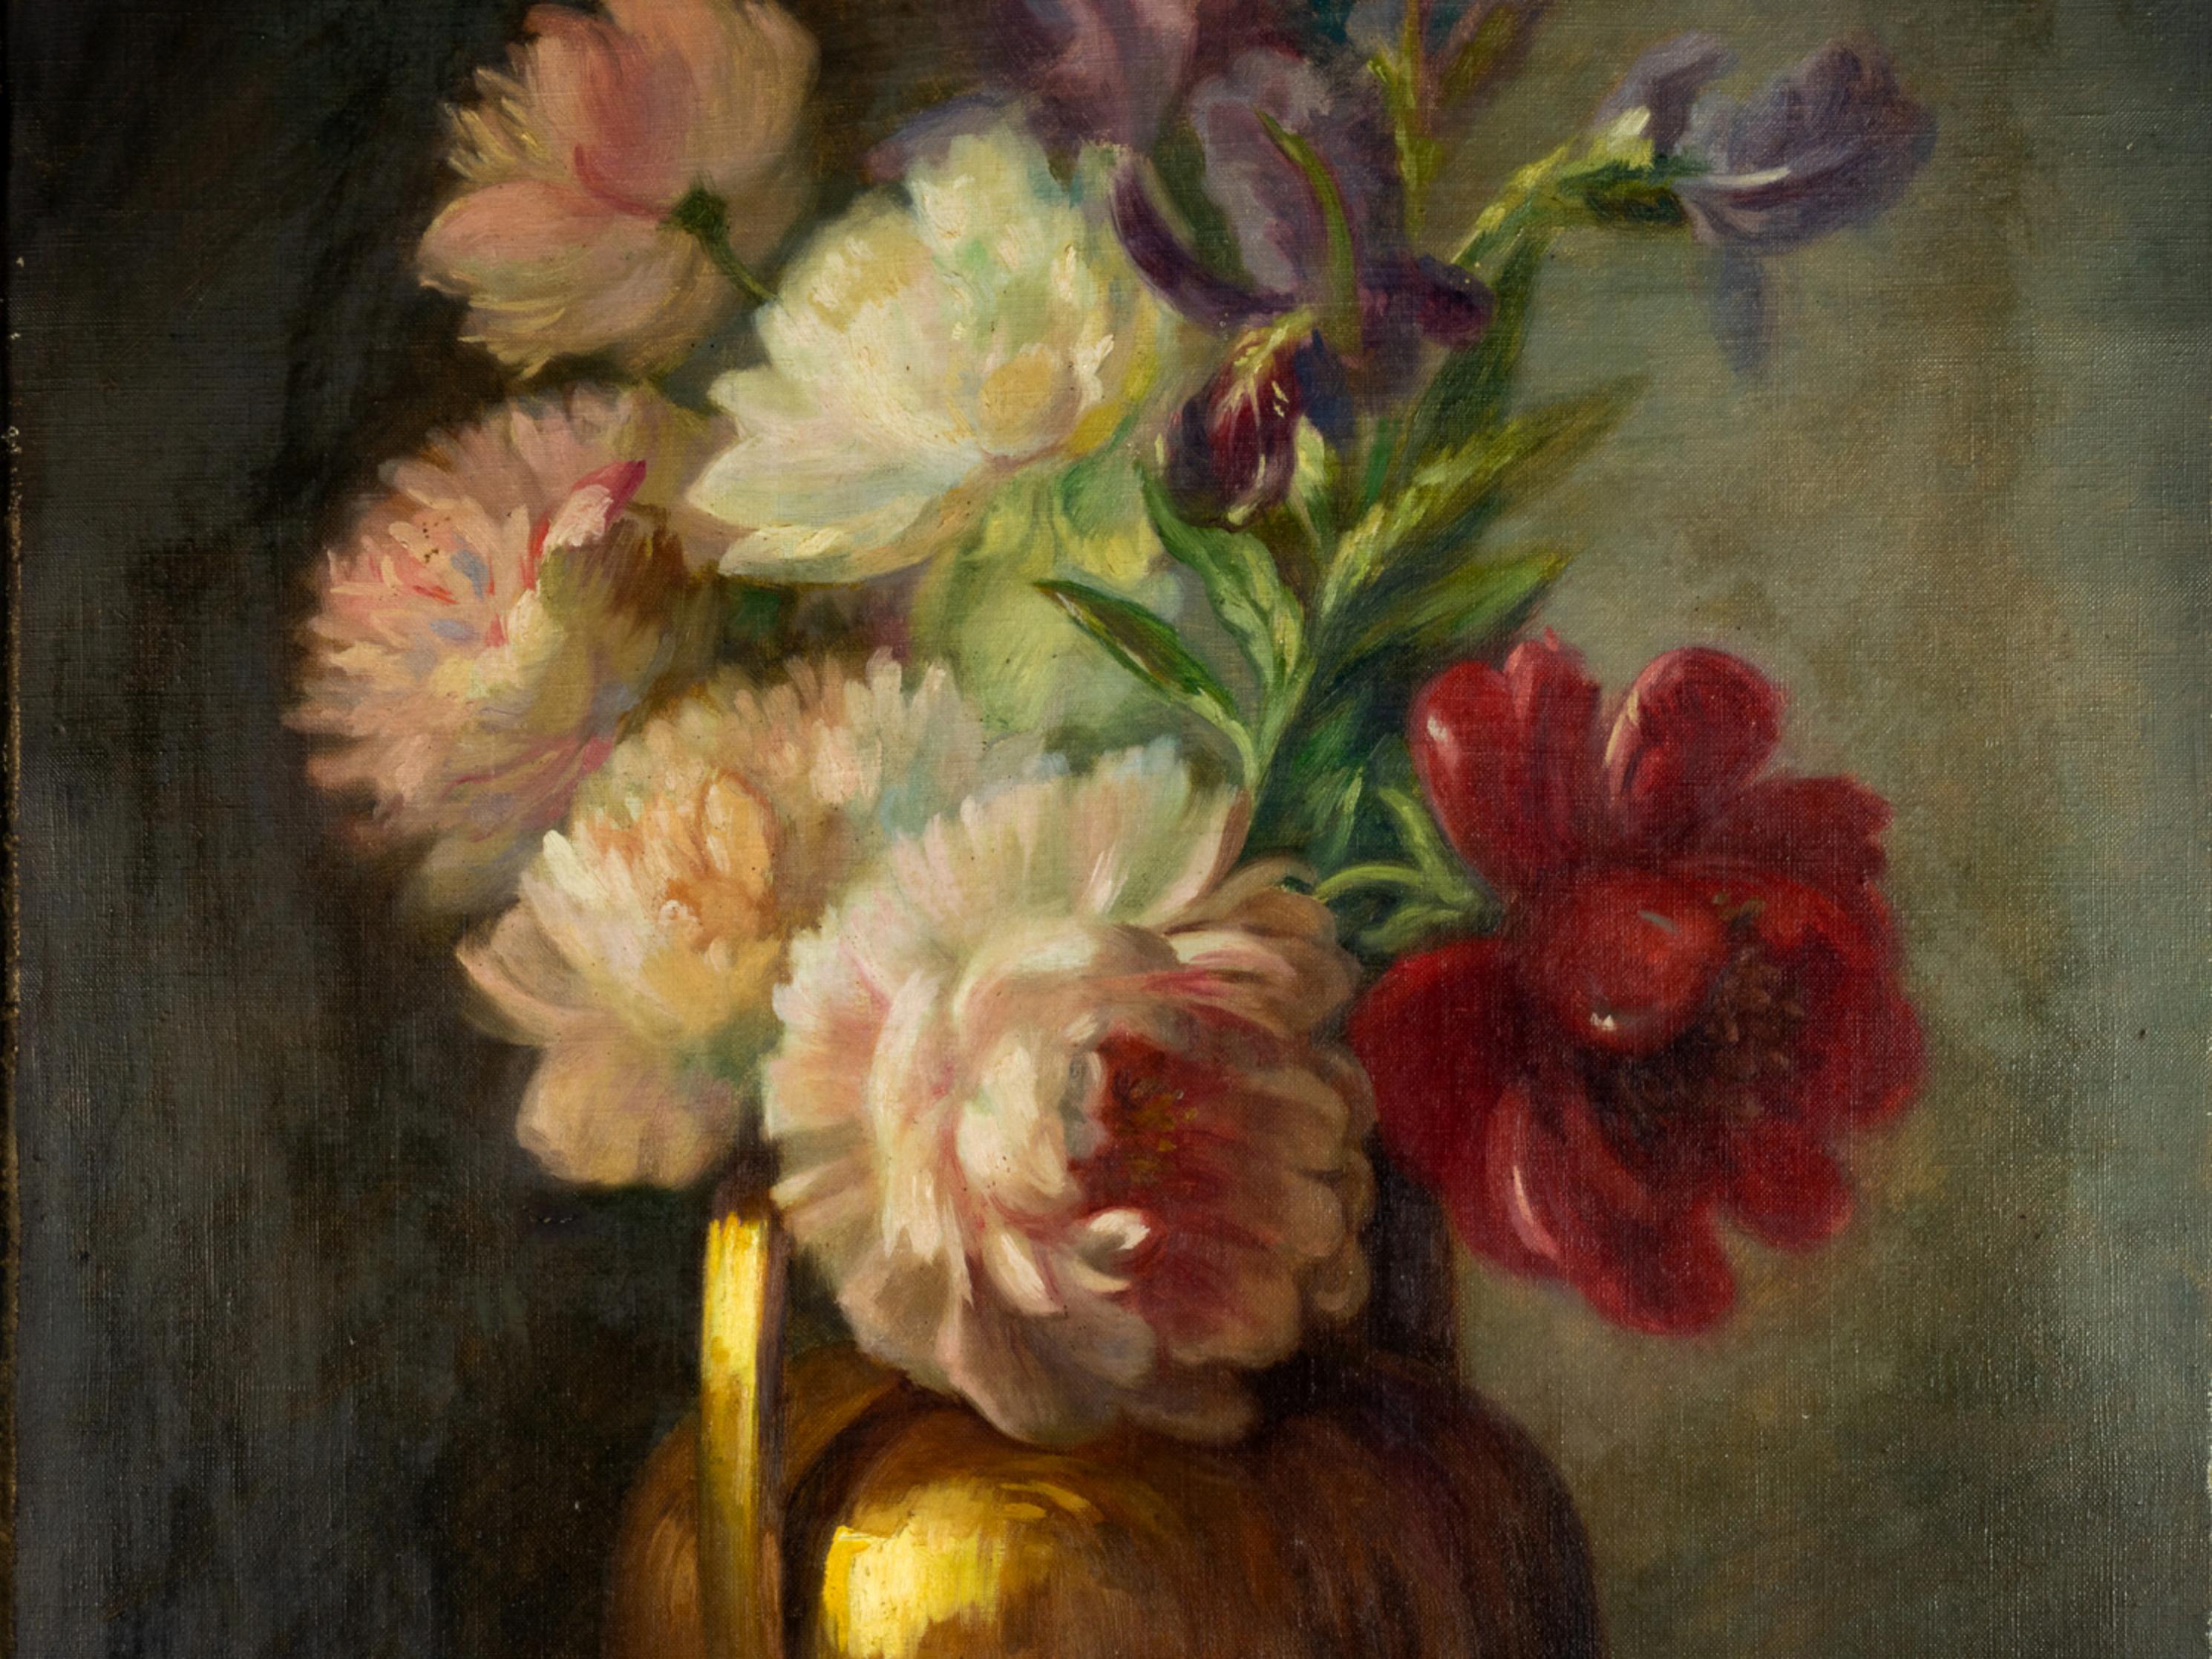 Ein seltenes, großformatiges Gemälde eines Blumenstilllebens mit Rosen, violetten Lilien und rotem Mohn in einer runden Kupferurne, bei dem die Sfumato-Technik verwendet wird, um weiche Kontraste zwischen den Farbtönen zu schaffen, signiert 